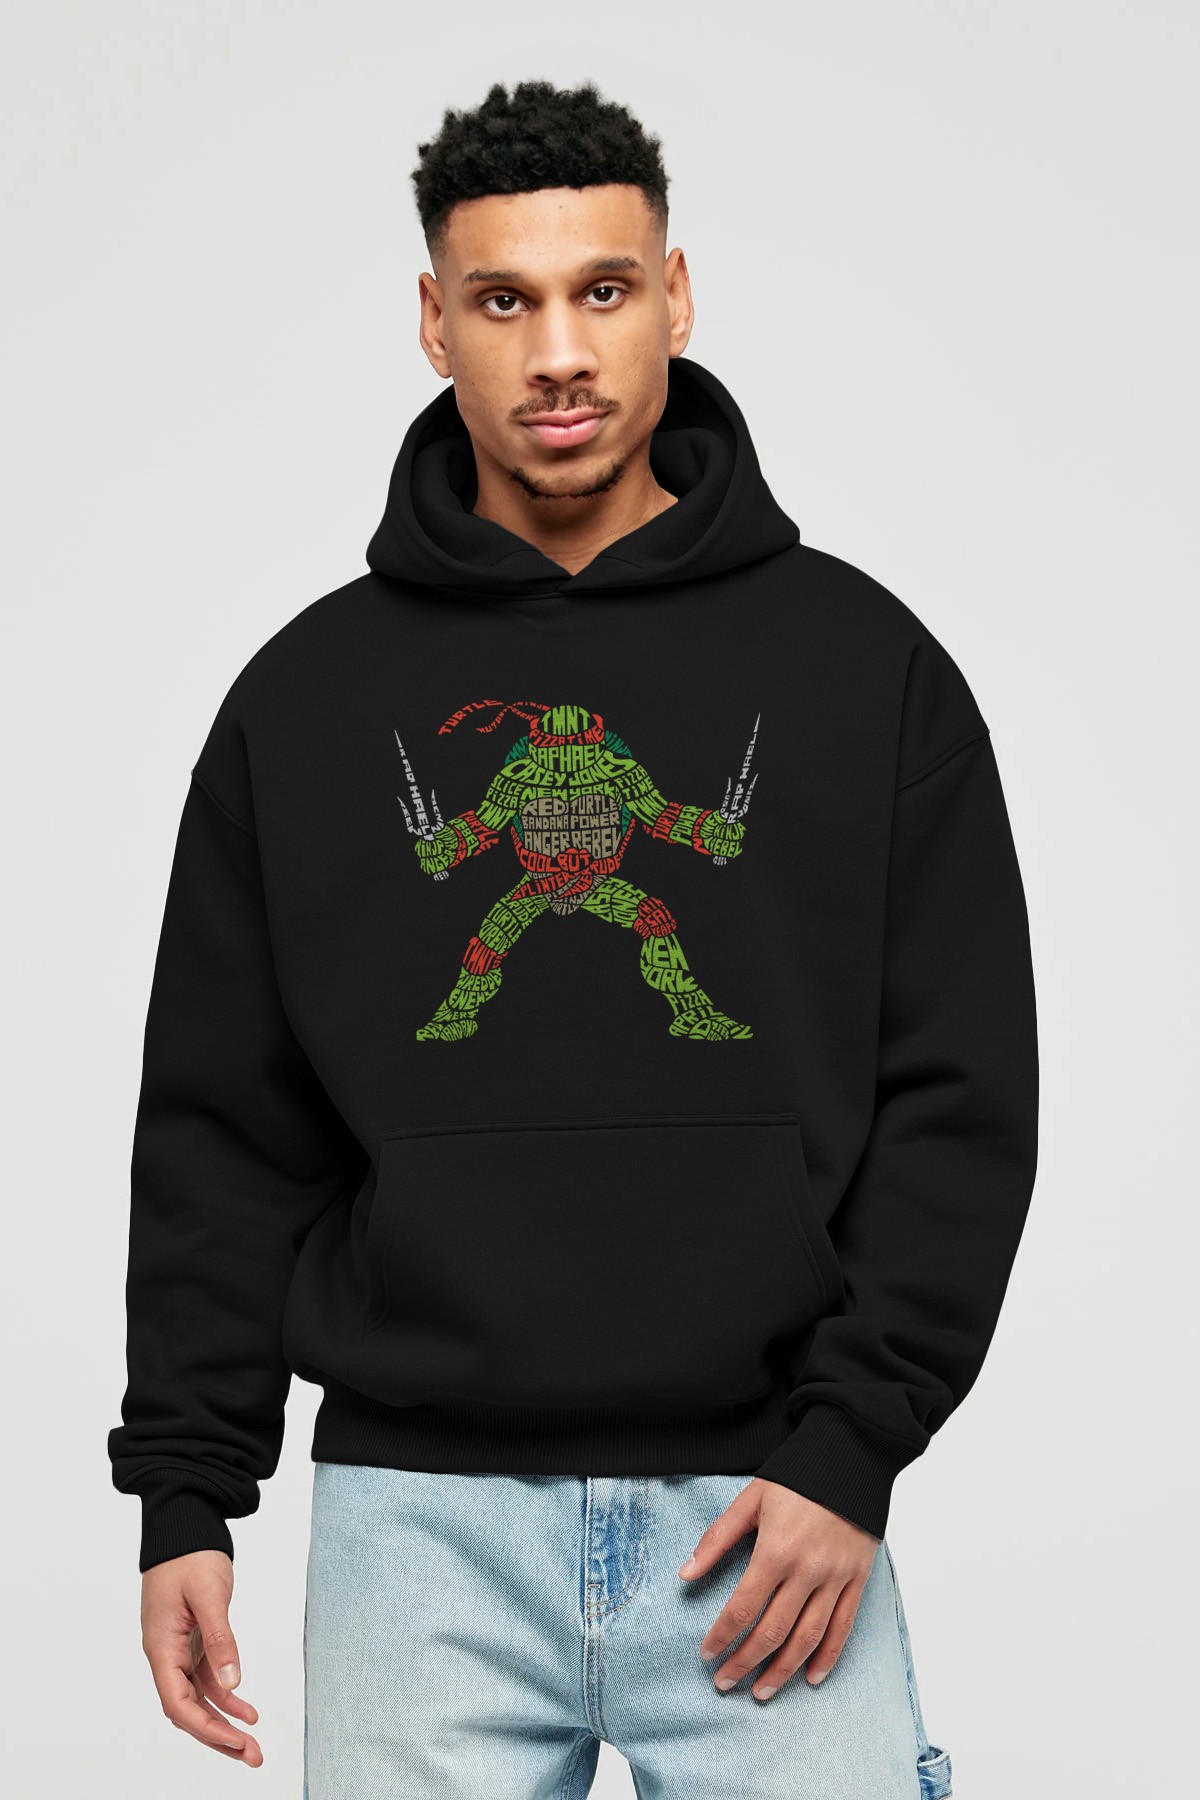 Ninja Turtle Ön Baskılı Hoodie Oversize Kapüşonlu Sweatshirt Erkek Kadın Unisex